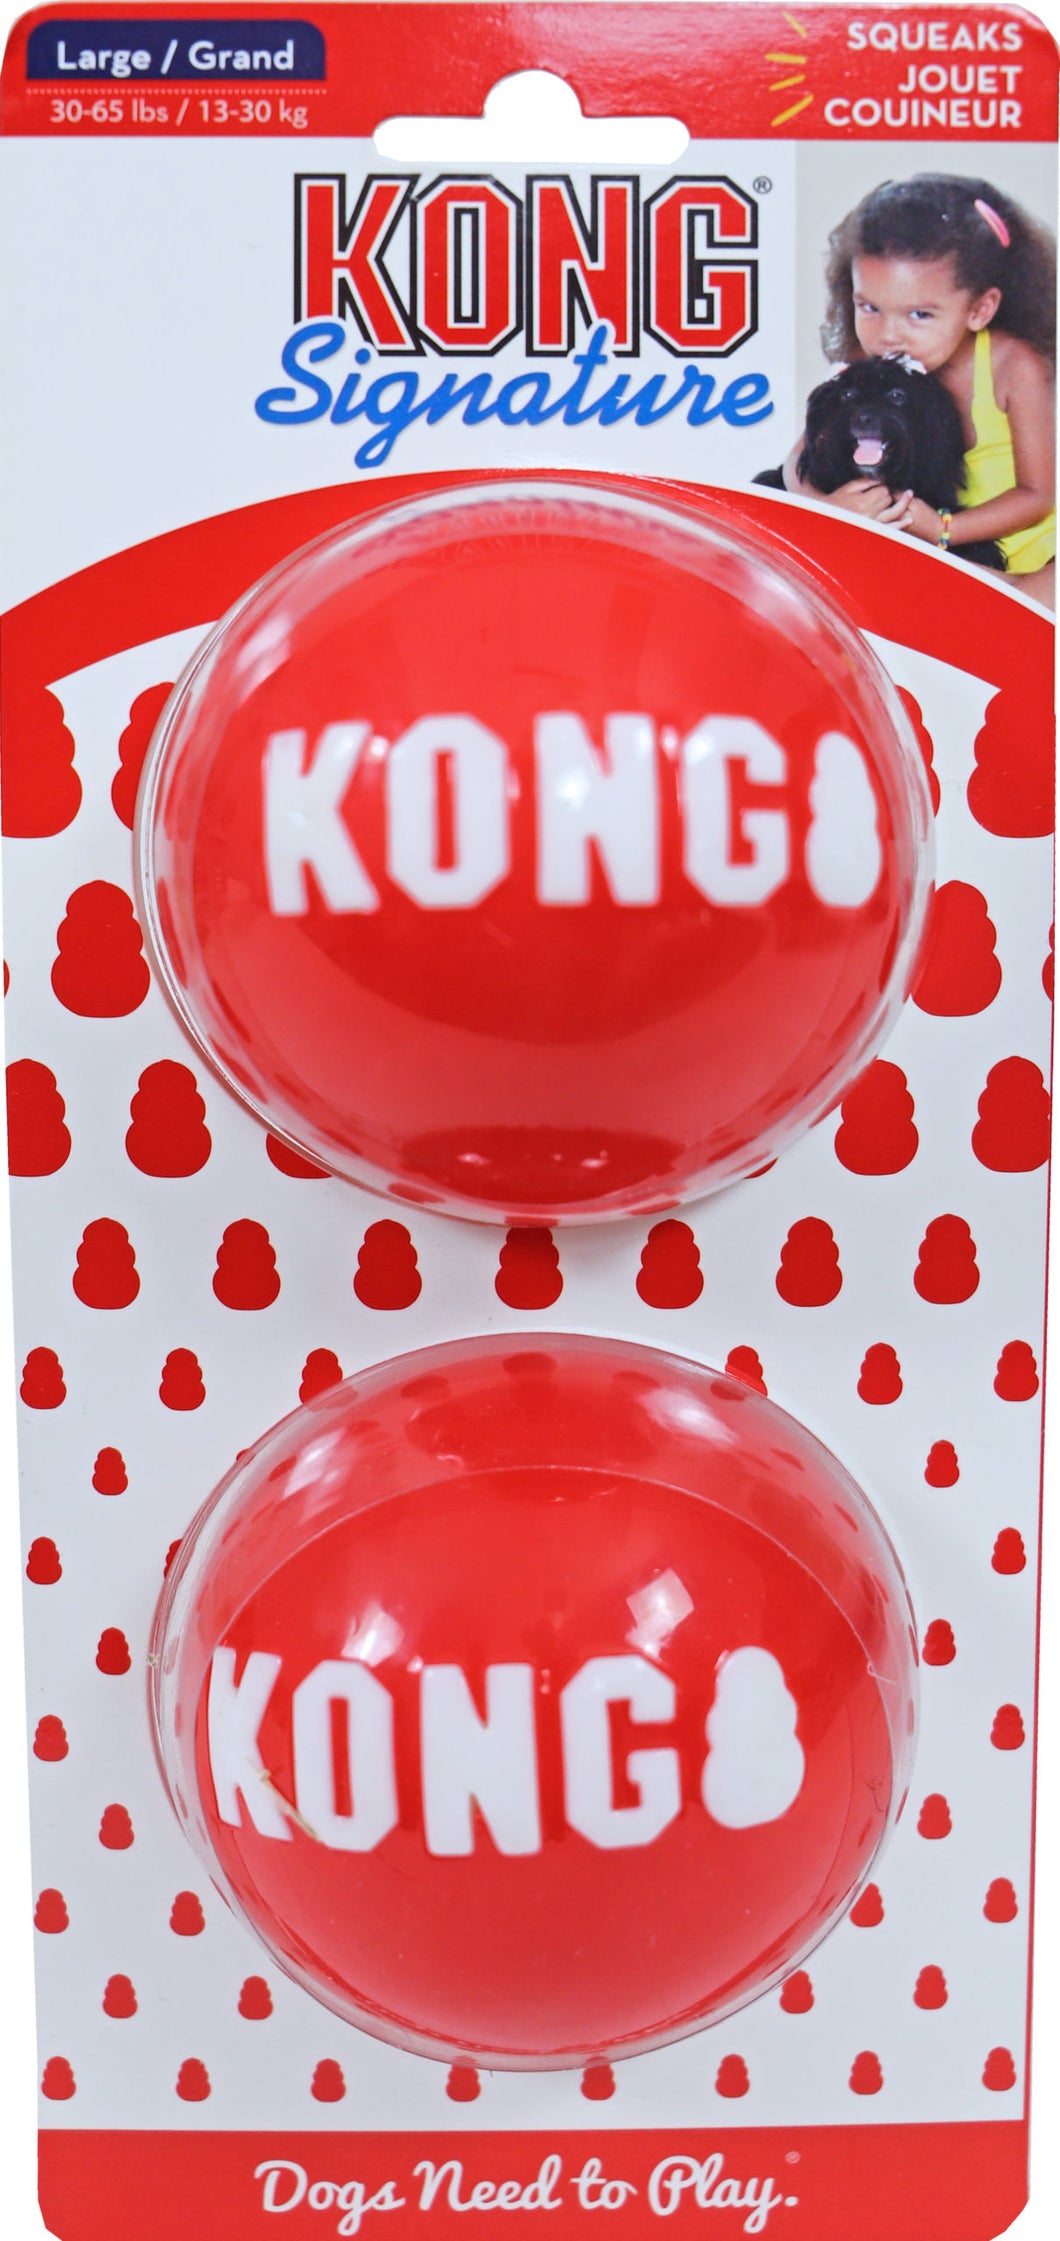 Kong Signature 2 Ball Pack - Small